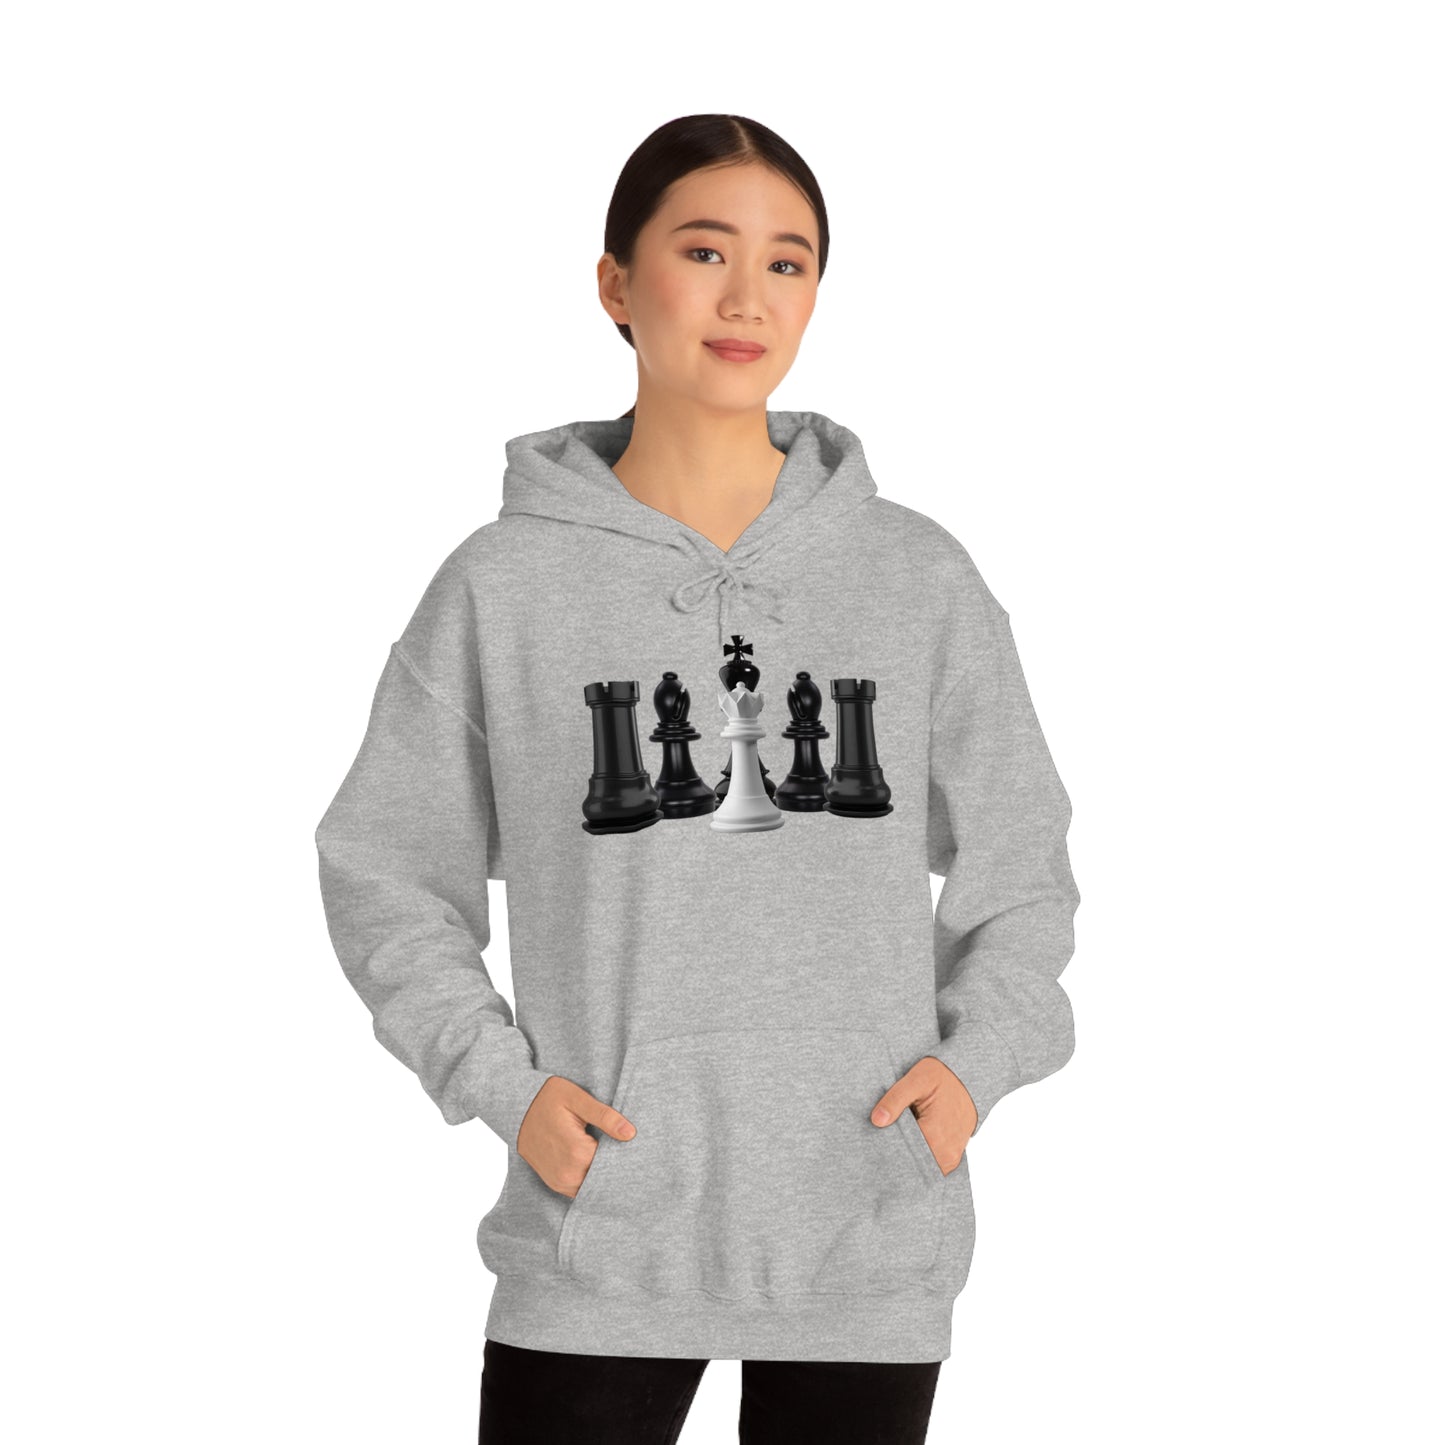 The Chess Grandmaster Hoodie™